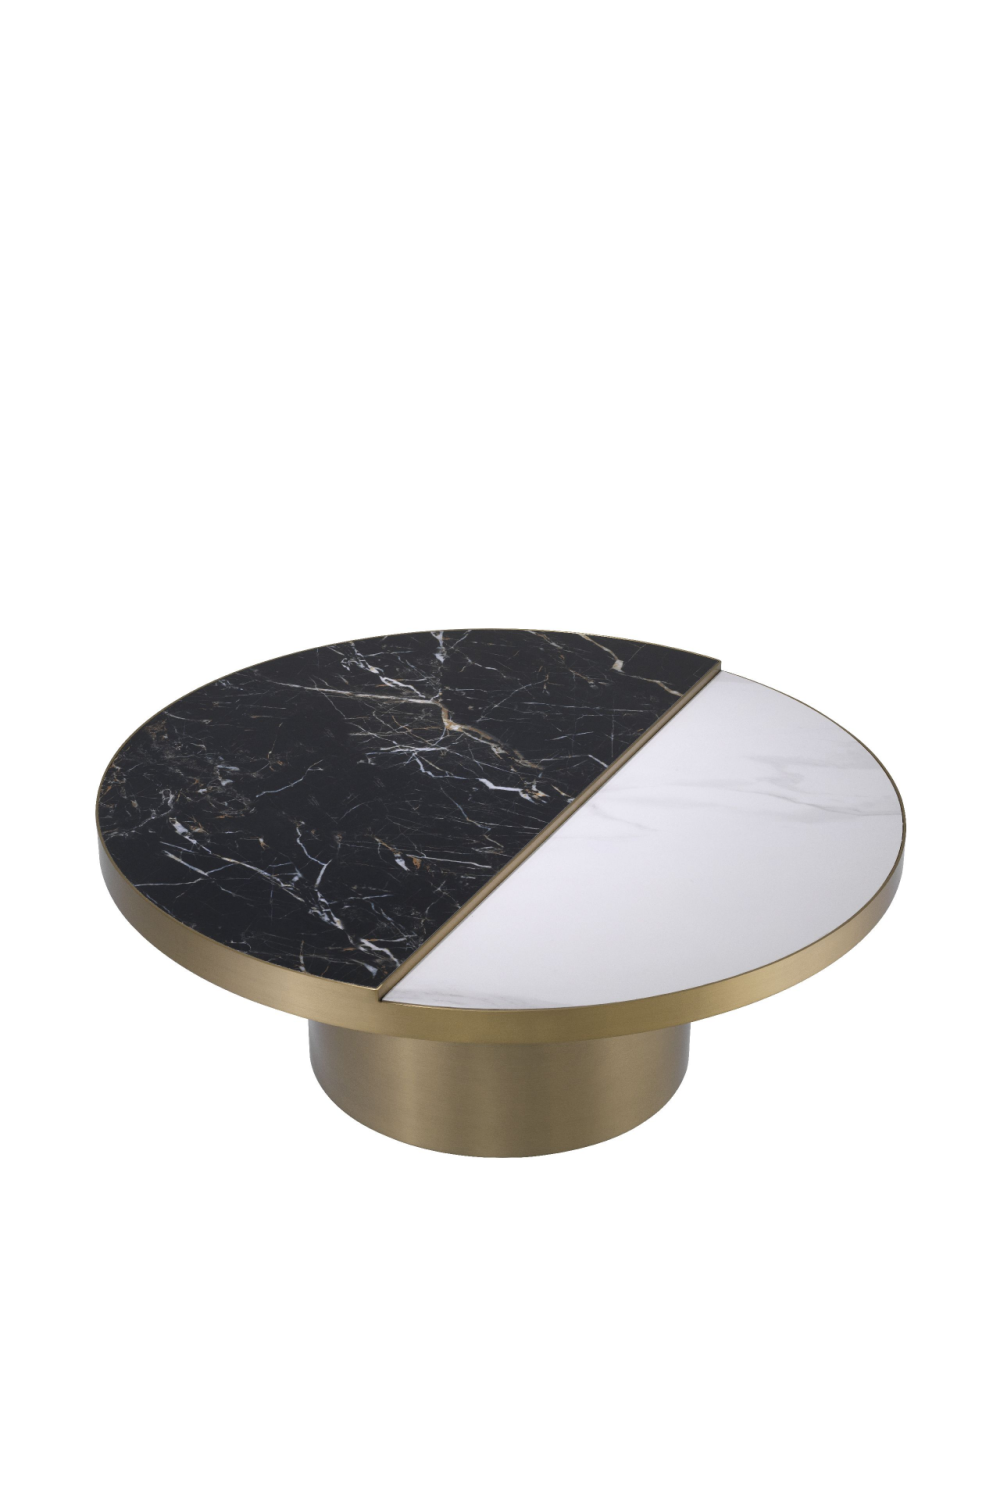 Round Brass Ceramic Coffee Table | Eichholtz Excelsior | #1 Eichholtz Retailer